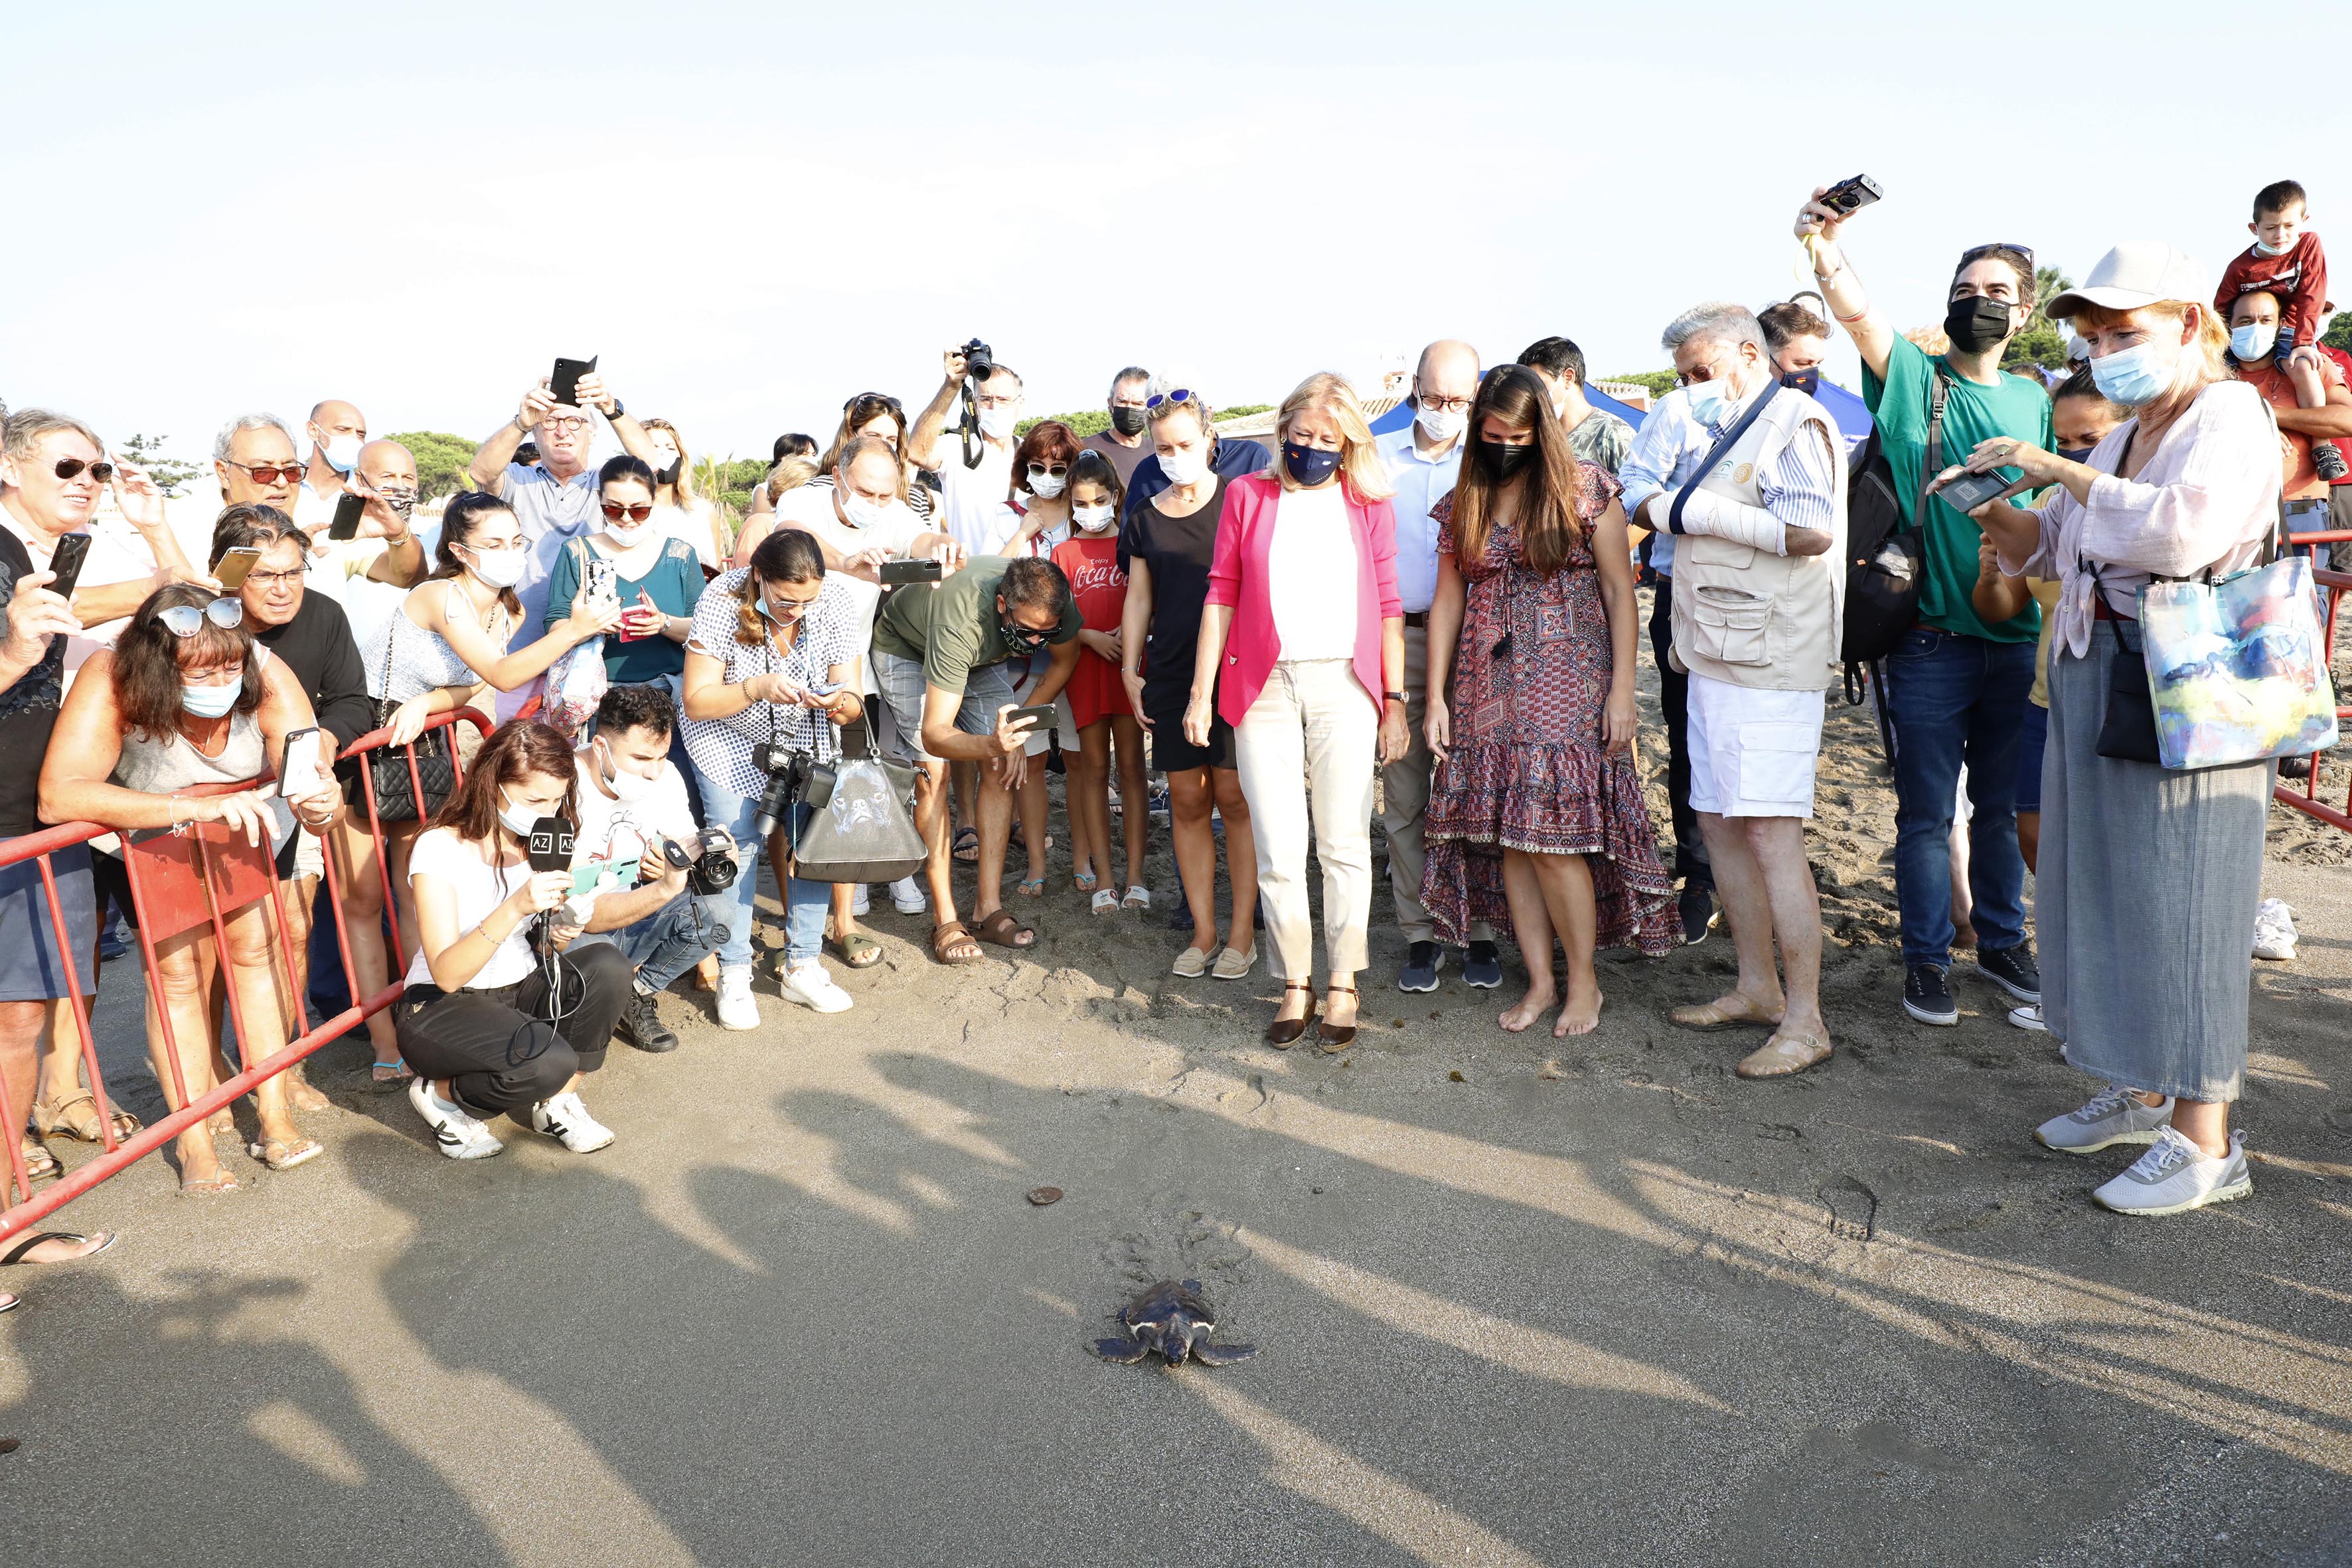 La alcaldesa participa en la suelta de 39 tortugas bobas en el mar de la playa de Cabopino y subraya “la gran labor” de los voluntarios que han colaborado en su cuidado desde la custodia del nido